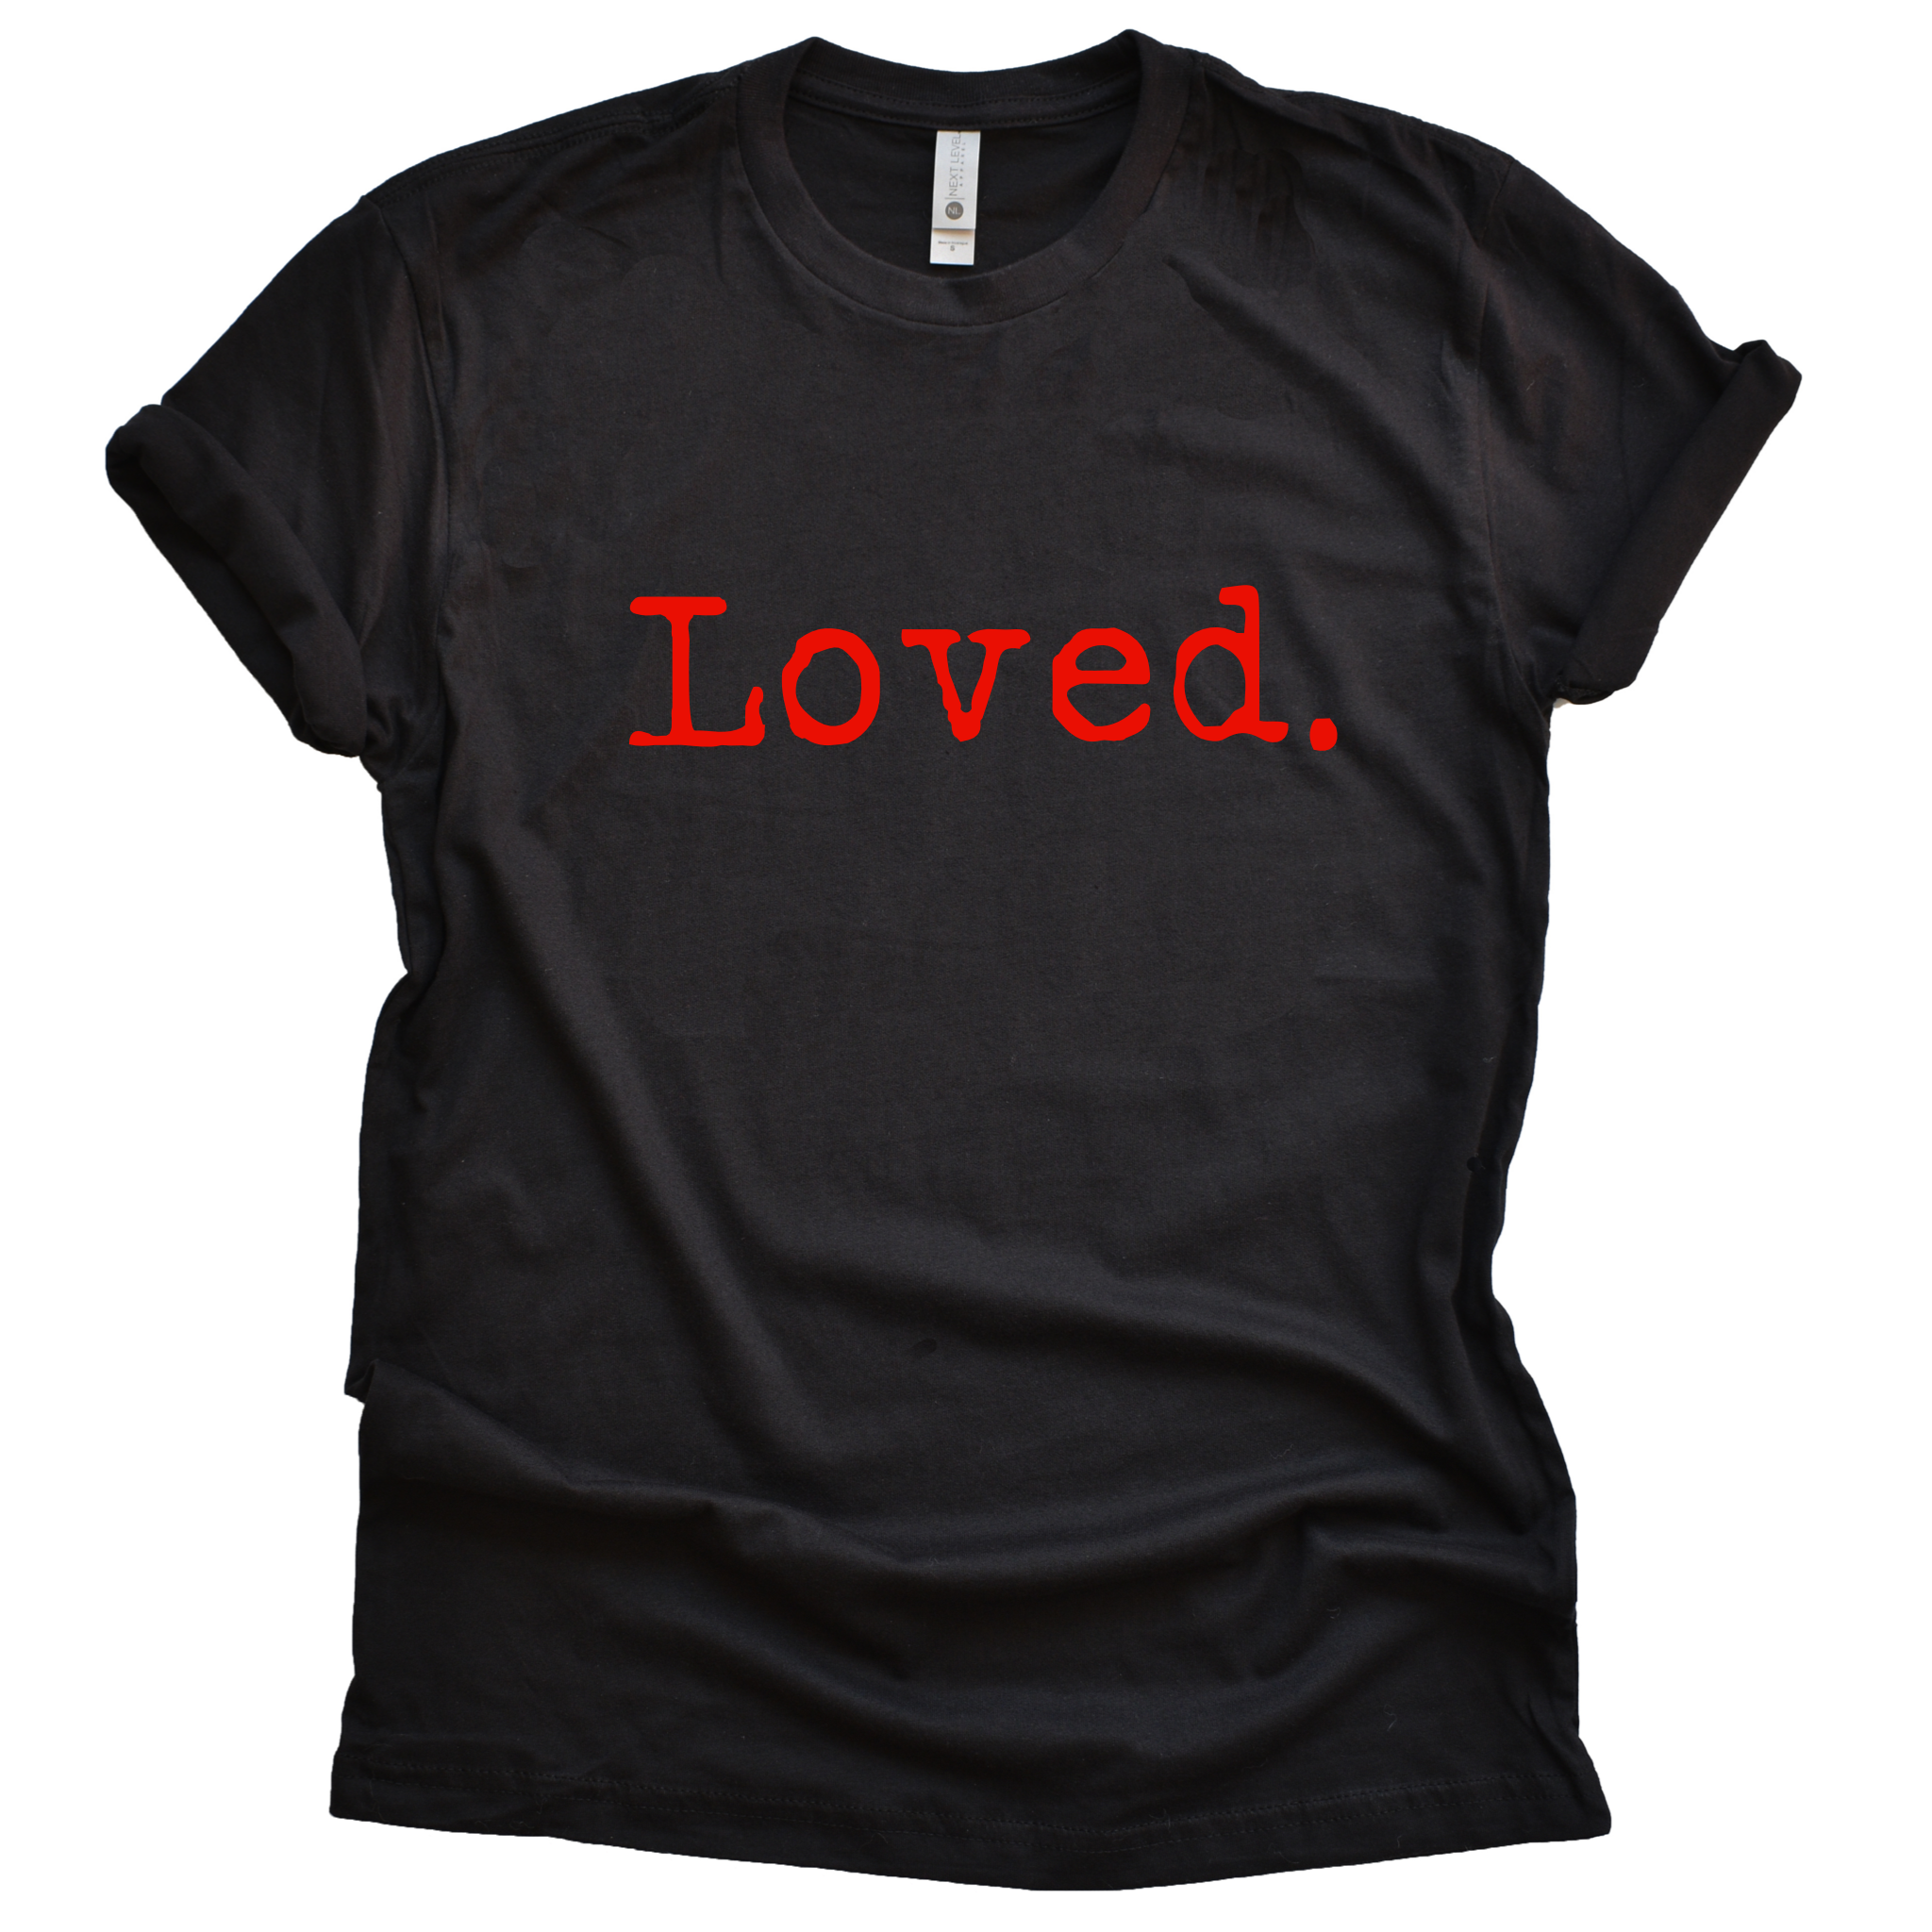 Loved. Unisex Short Sleeve T-Shirt